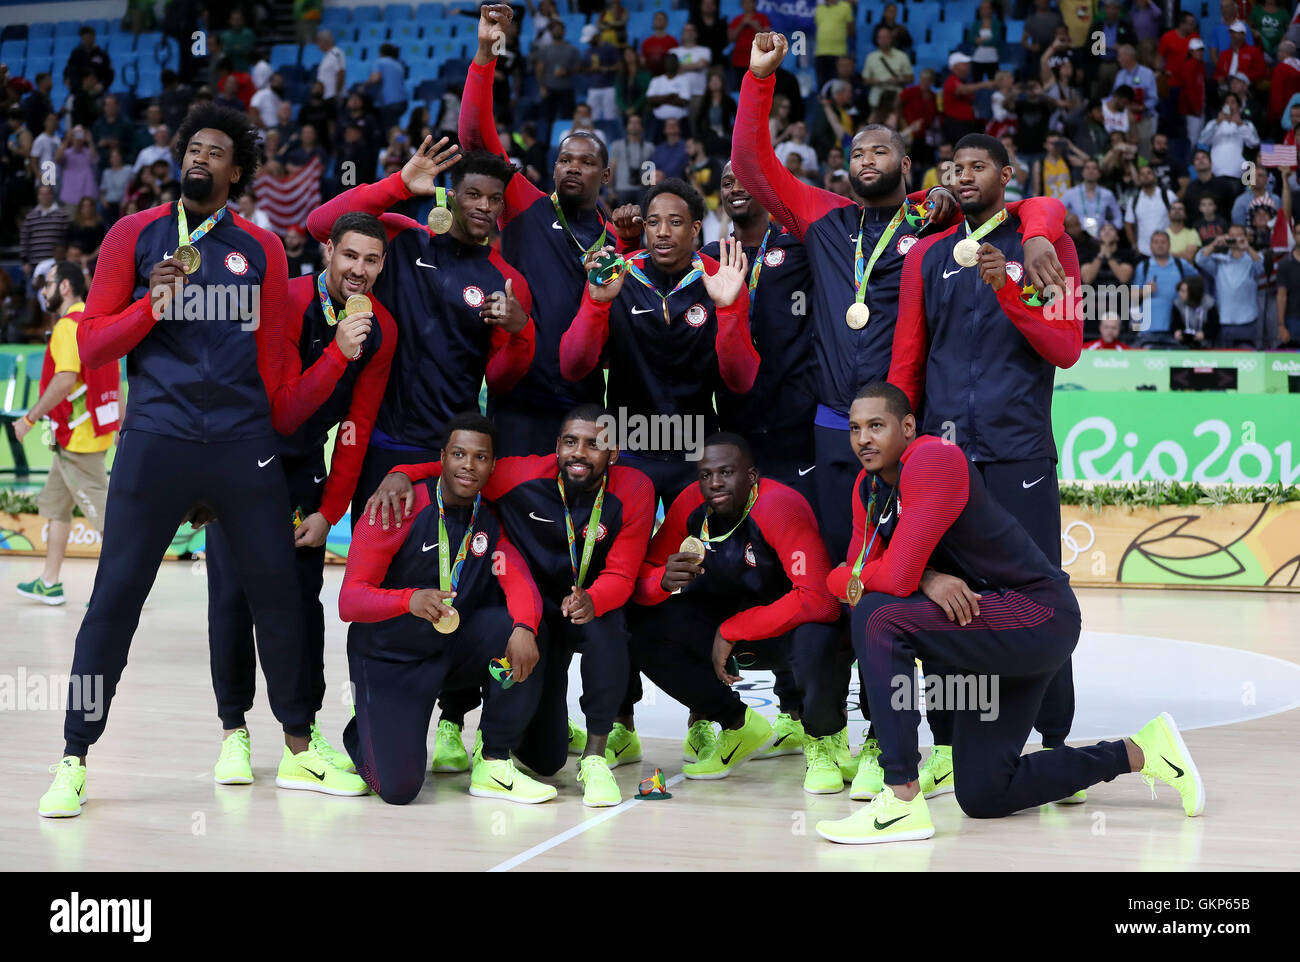 RIO DE JANEIRO, RJ - 21.08.2016 : JEUX OLYMPIQUES DE RIO 2016 - Basket-ball  les joueurs US célébrer la médaille d'après le match entre la France et la  Serbie Basket-ball aux Jeux